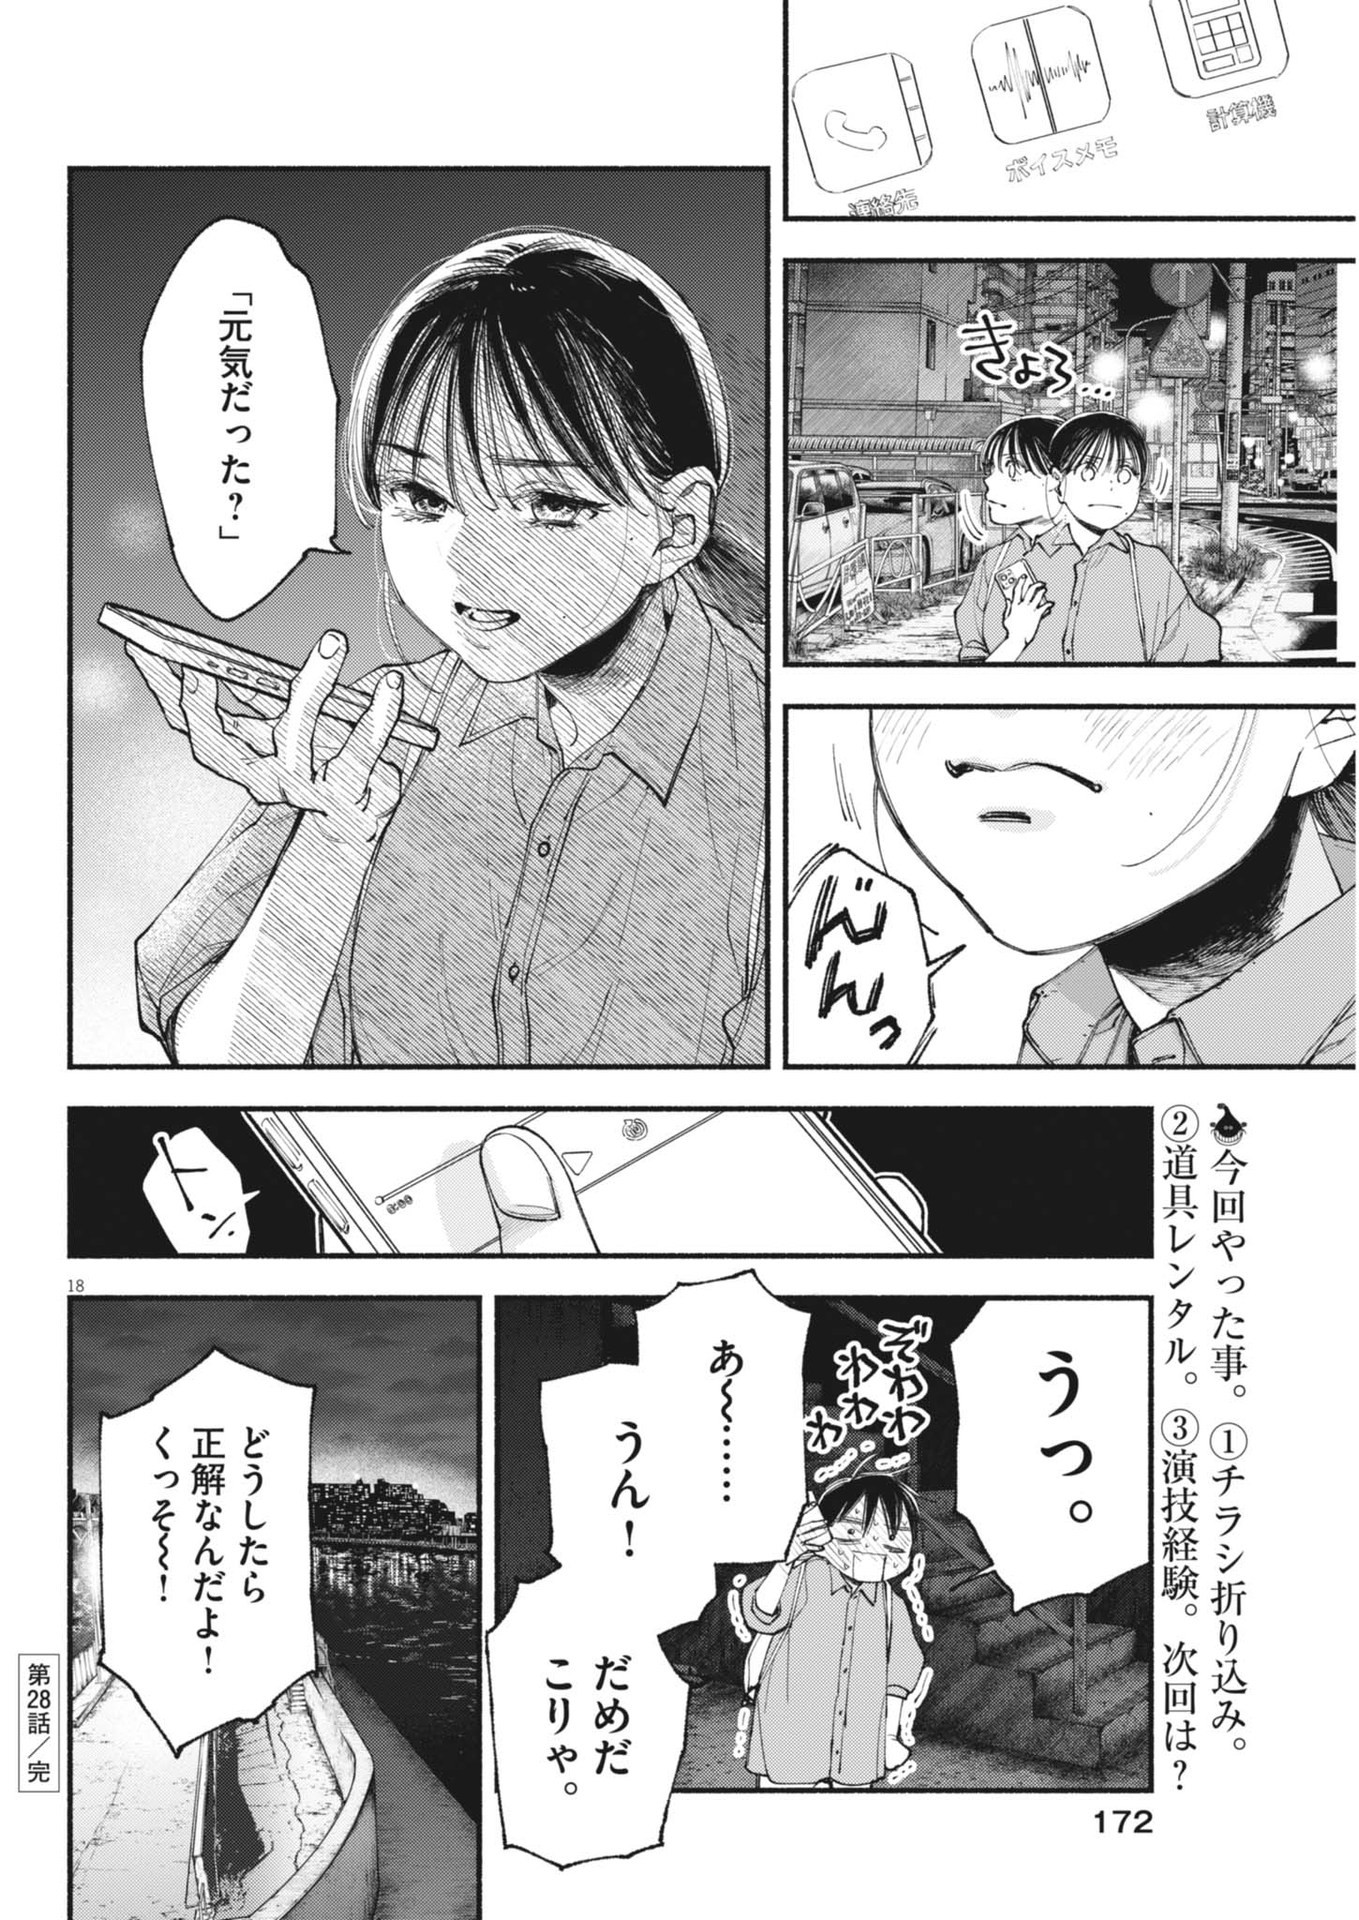 Konoyo wa Tatakau Kachi ga Aru  - Chapter 28 - Page 18